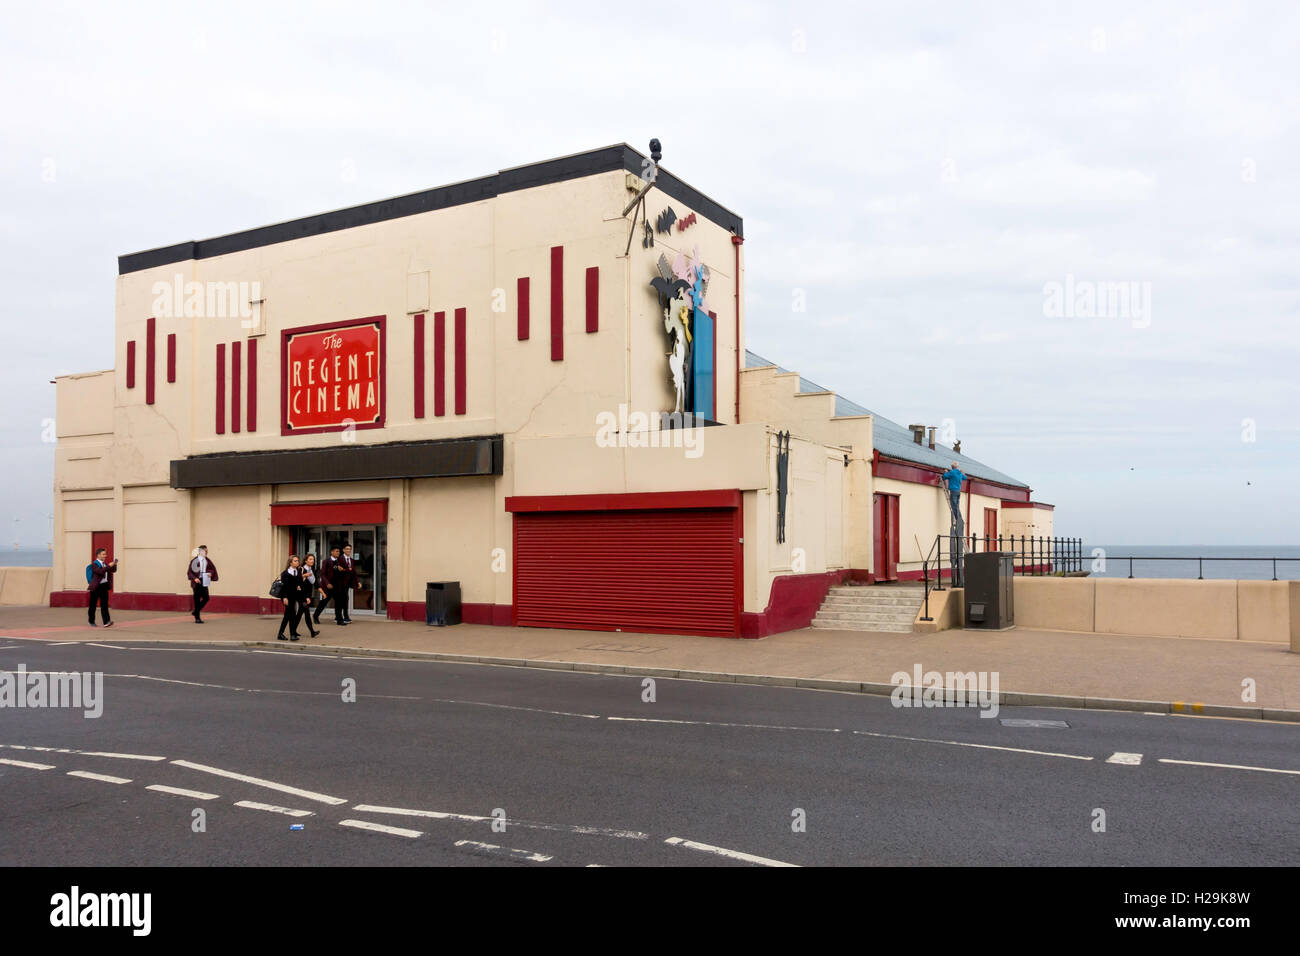 Cinéma Regent sur front de Redcar un music-hall à l'origine construit en 1937 il a été converti en cinéma dans les années 60 décoration murale Banque D'Images